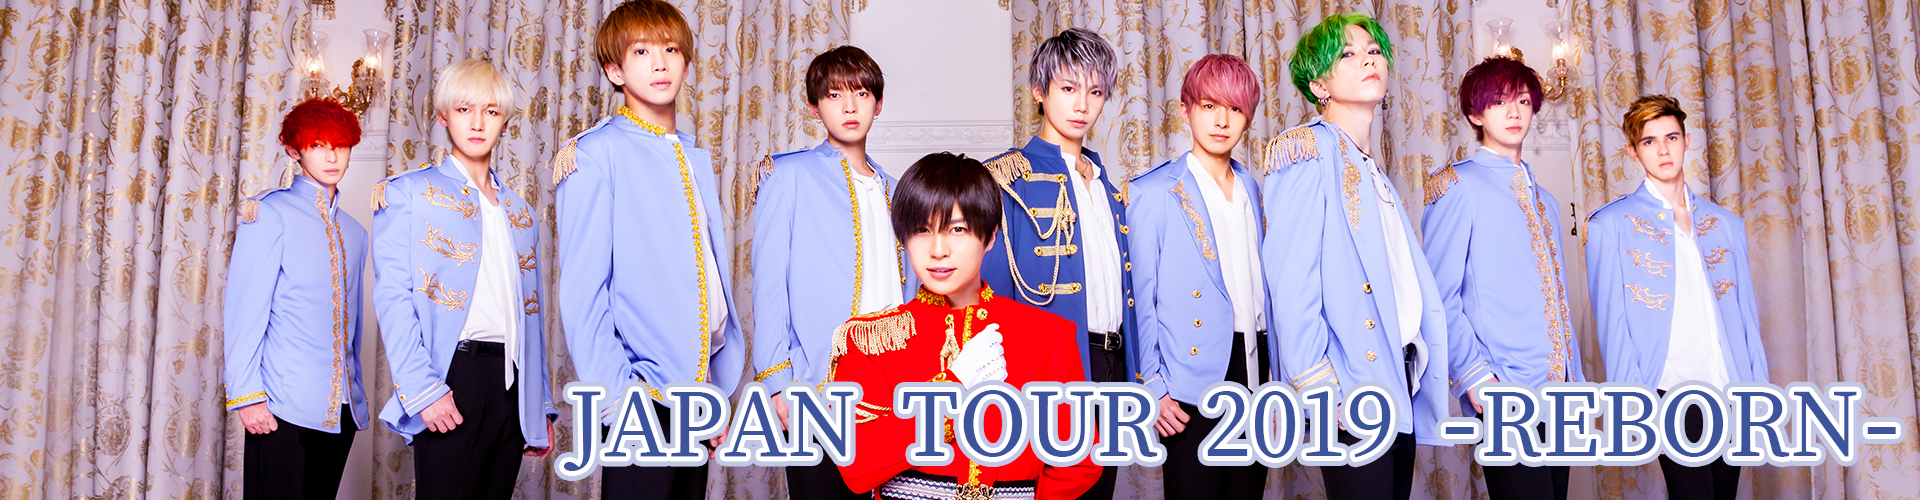 JAPAN TOUR 2019 -REBORN- main image